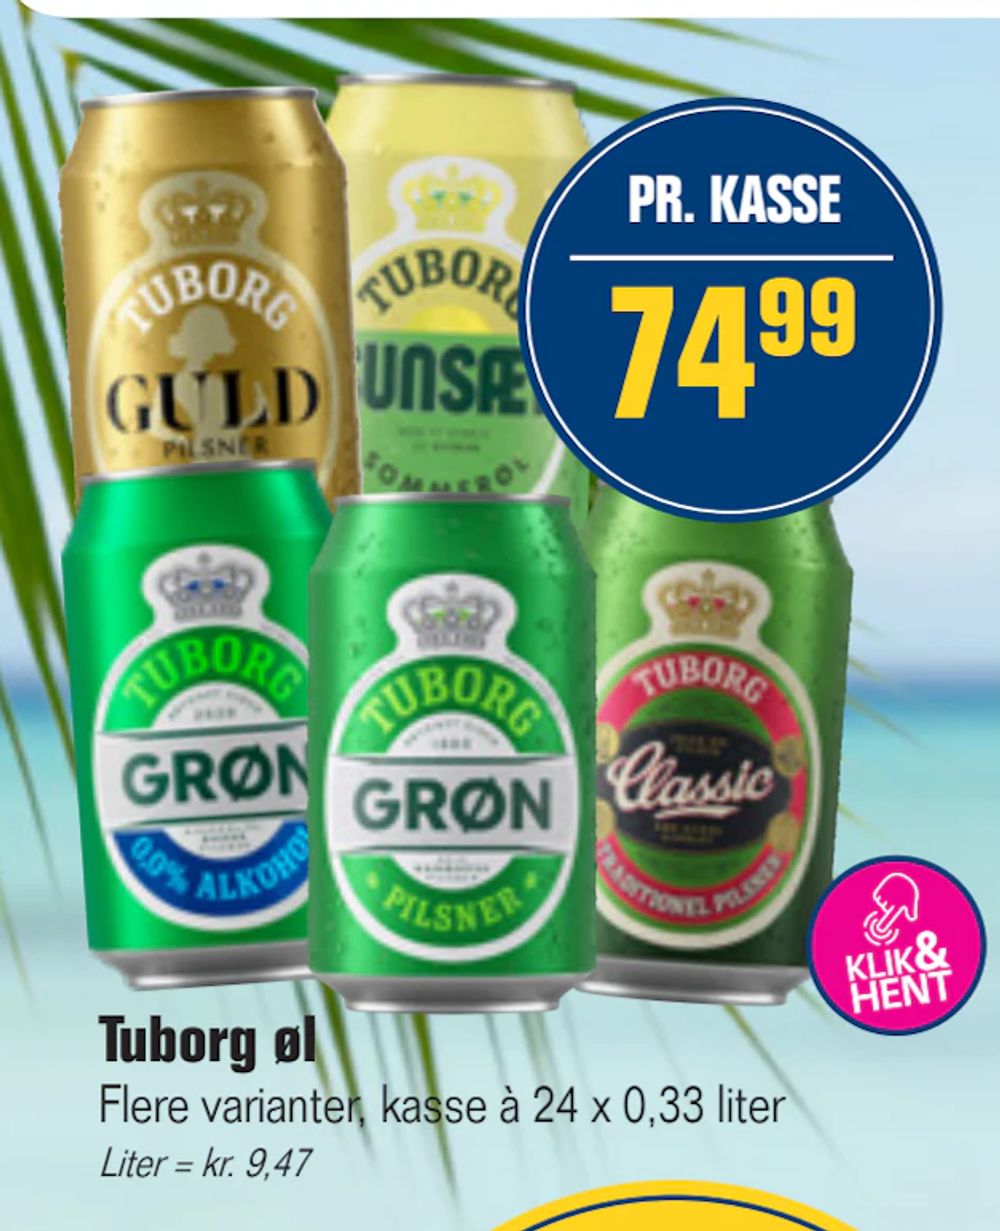 Tilbud på Tuborg øl fra Otto Duborg til 74,99 kr.